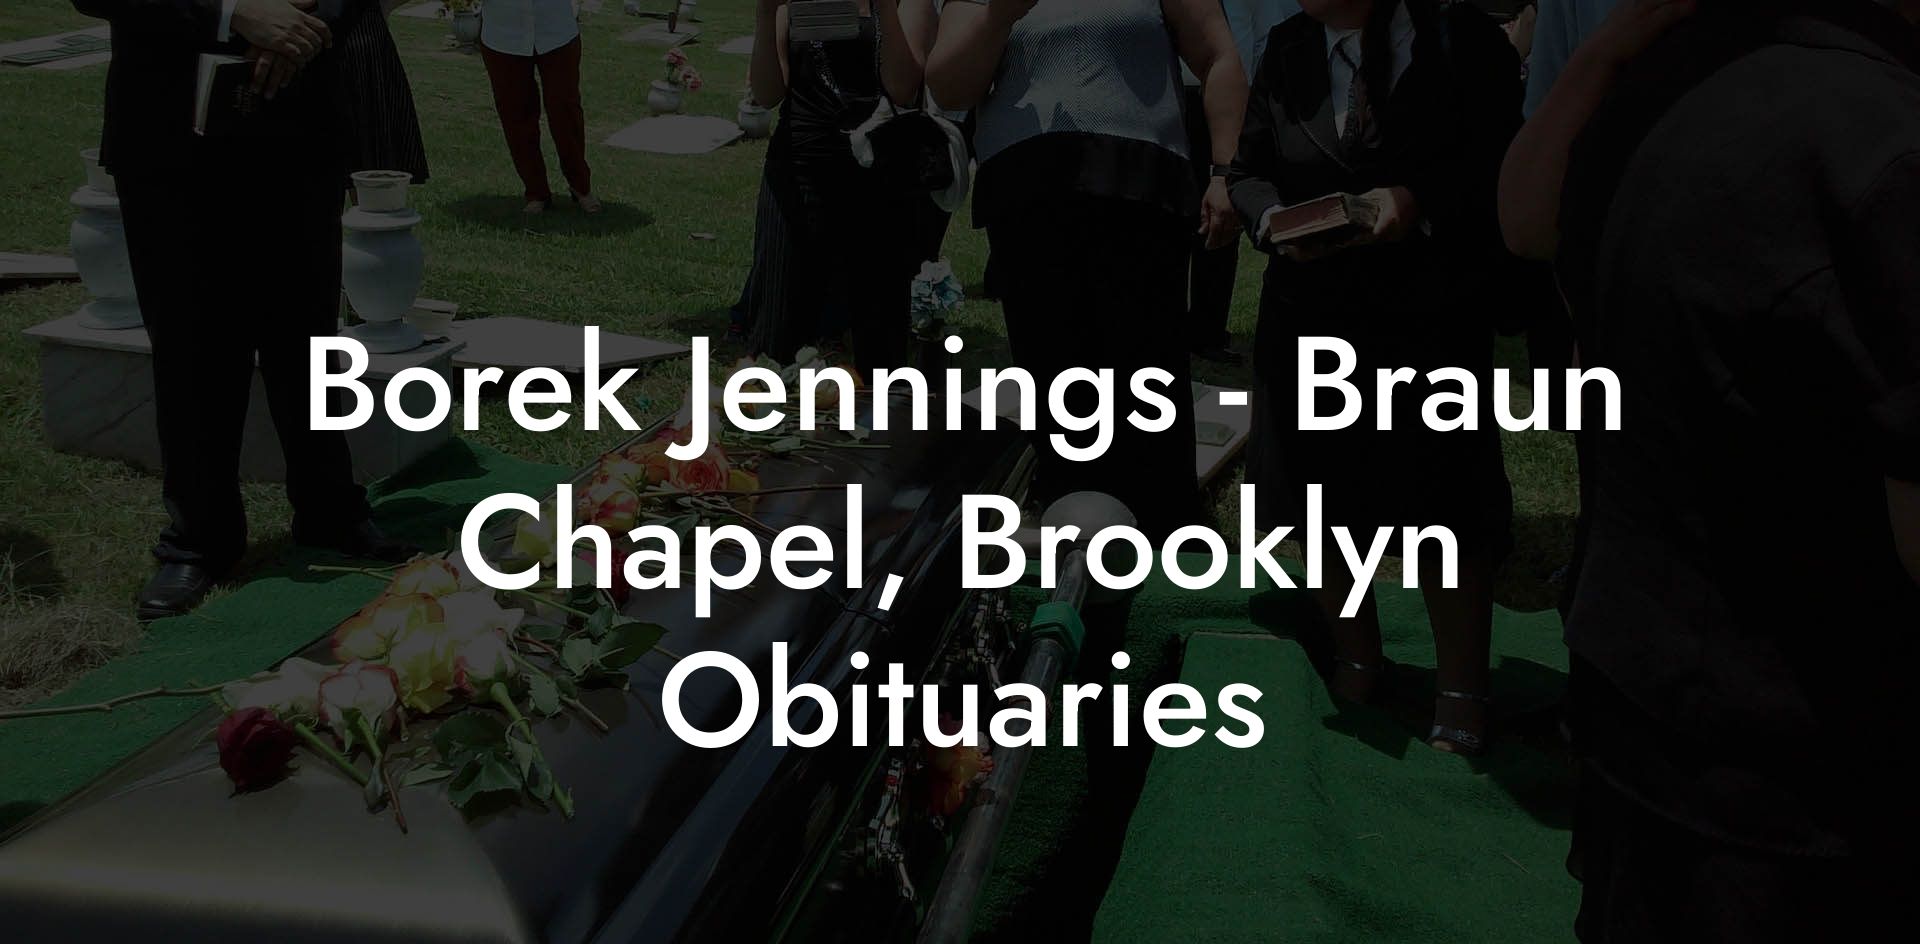 Borek Jennings - Braun Chapel, Brooklyn Obituaries